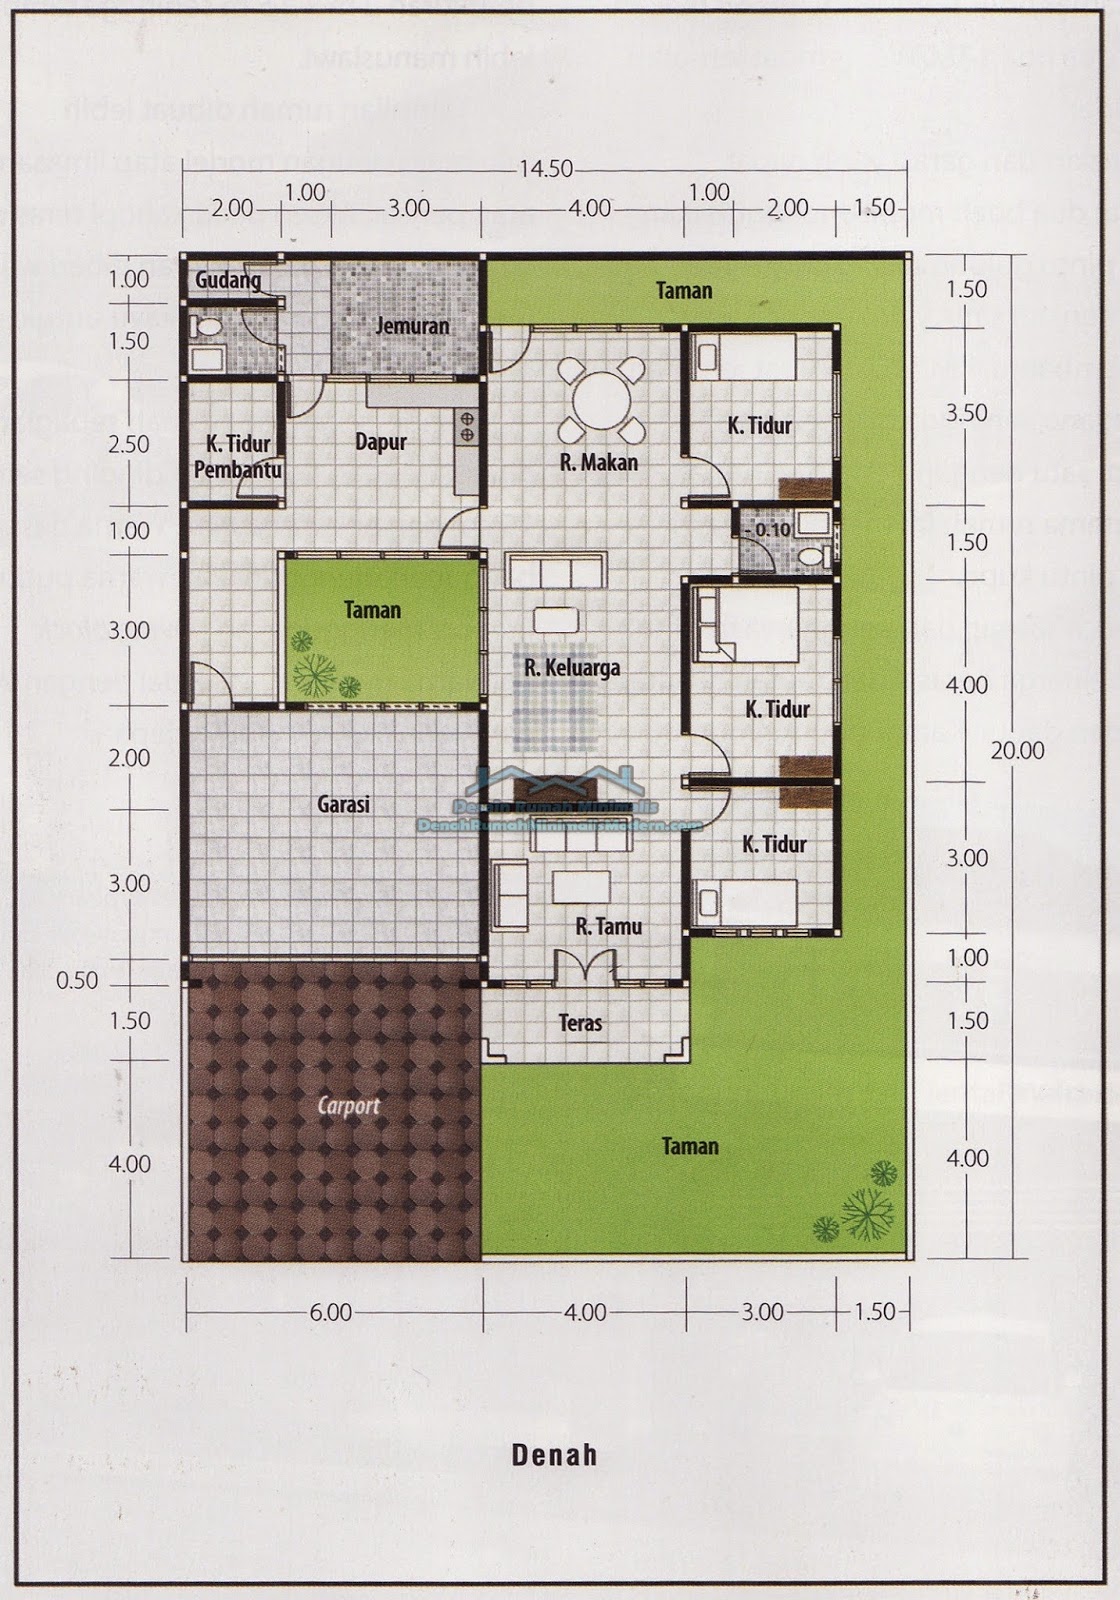 Desain Rumah Minimalis 1 Lantai Luas Tanah 200m2 Desain Rumah